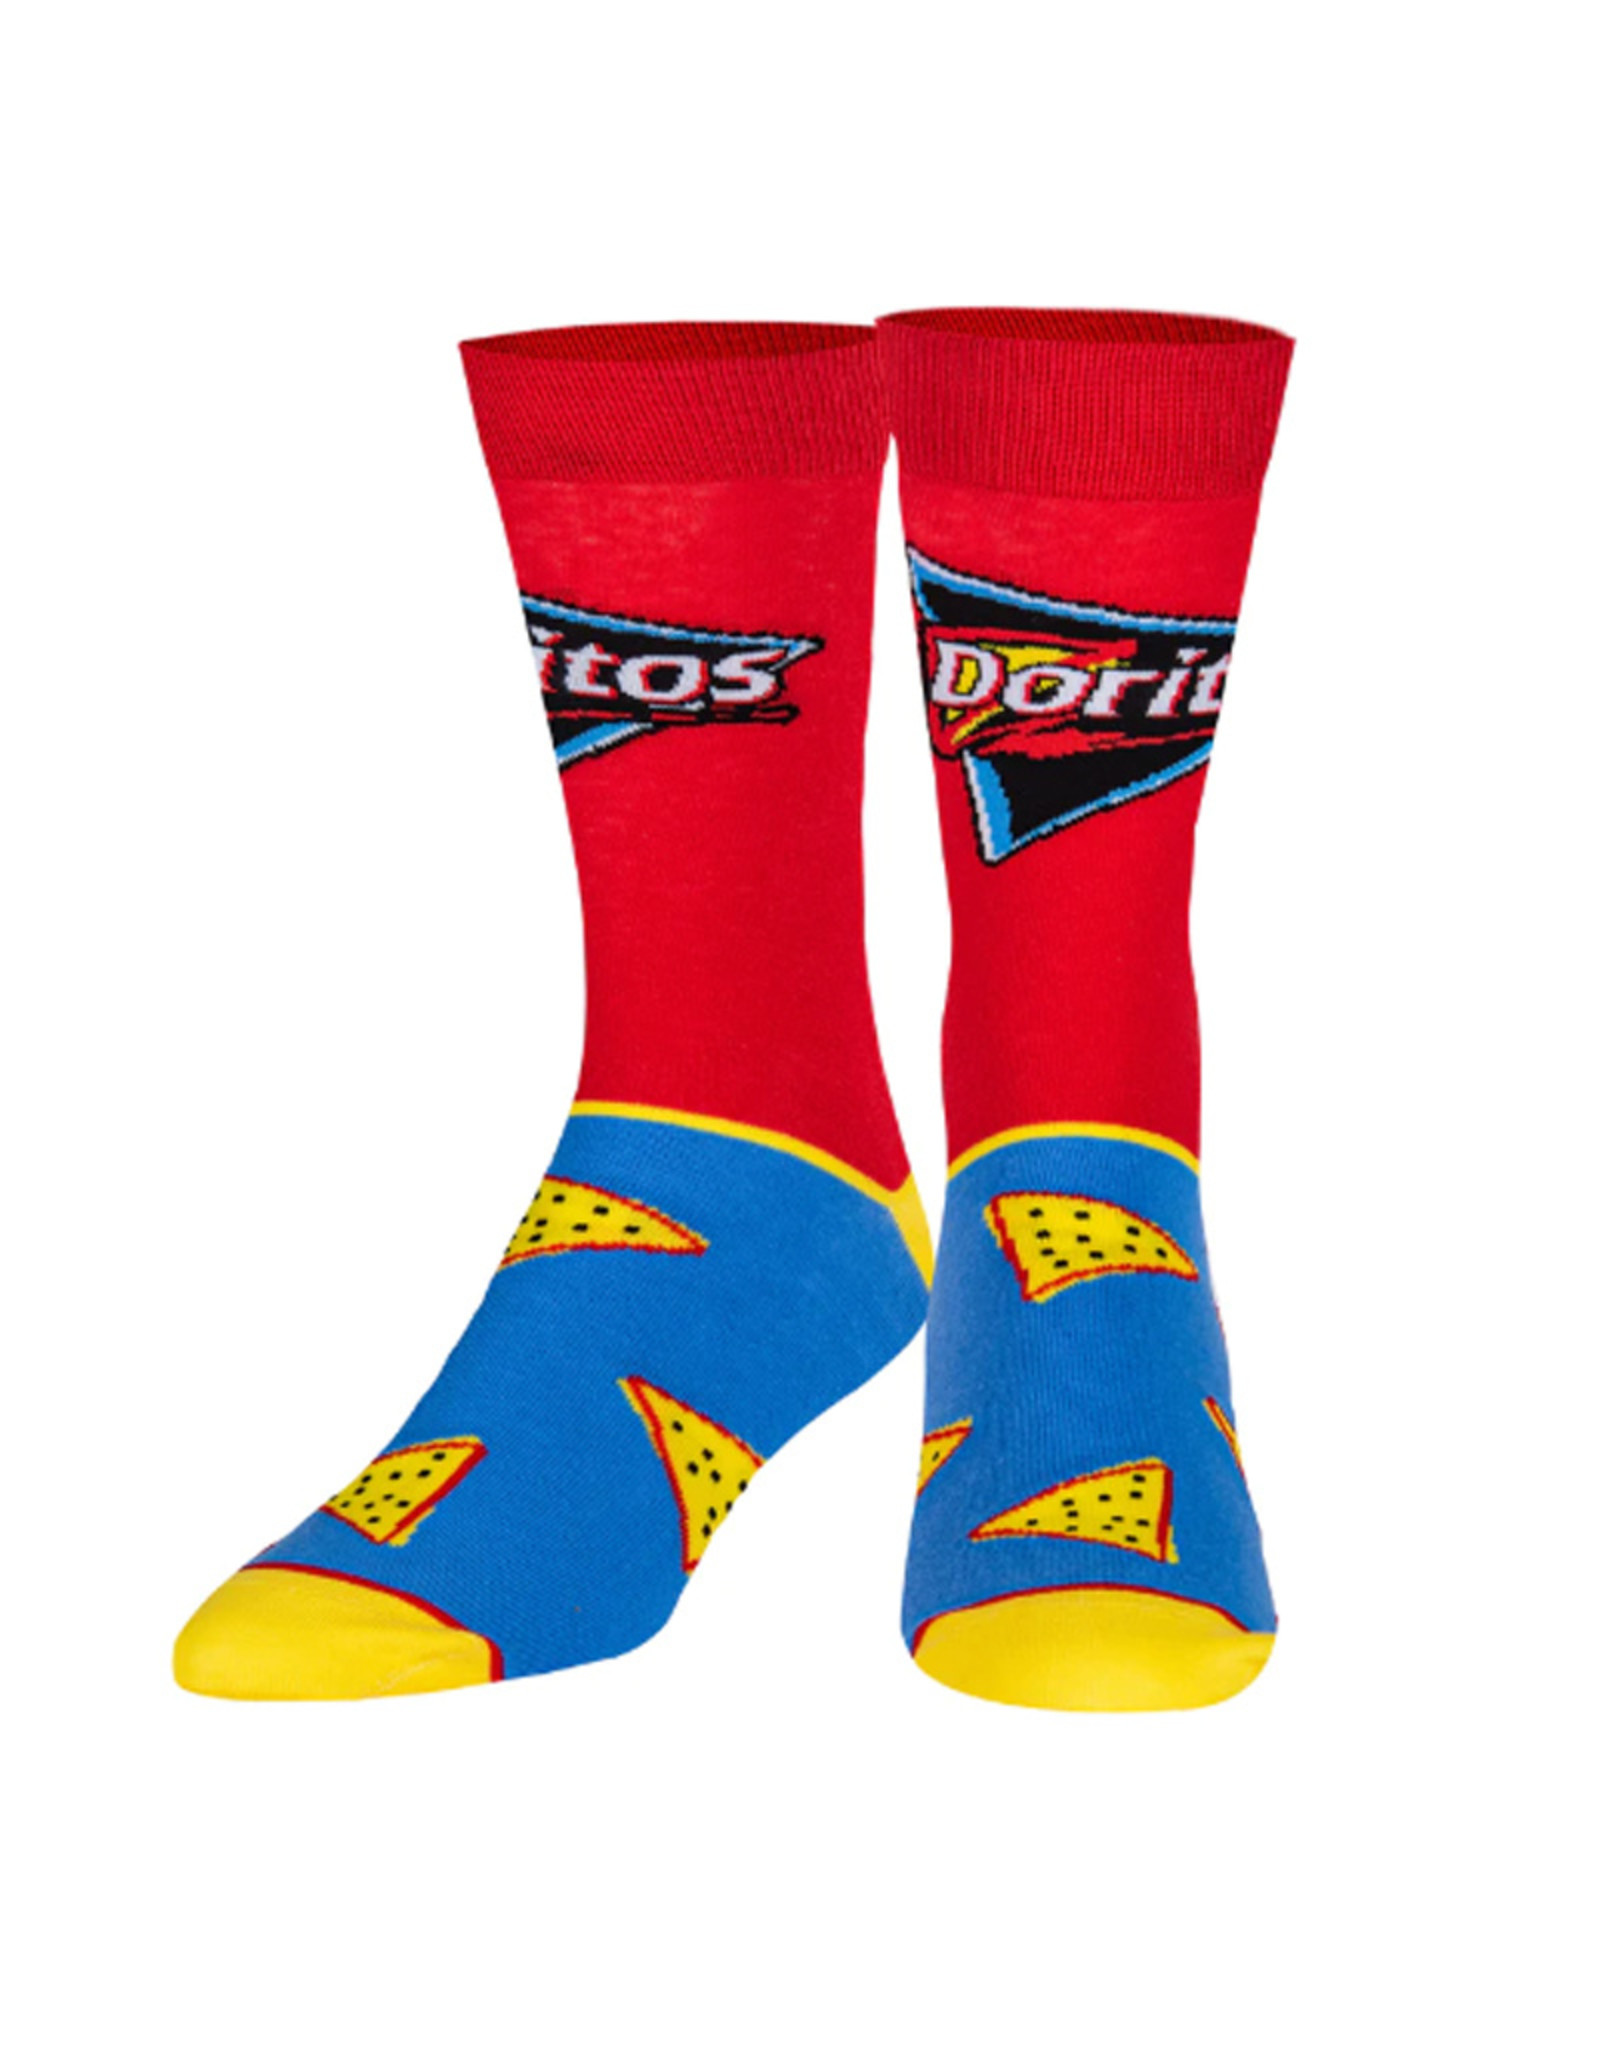 Odd Sox Odd Sox: Doritos 2000 Socks